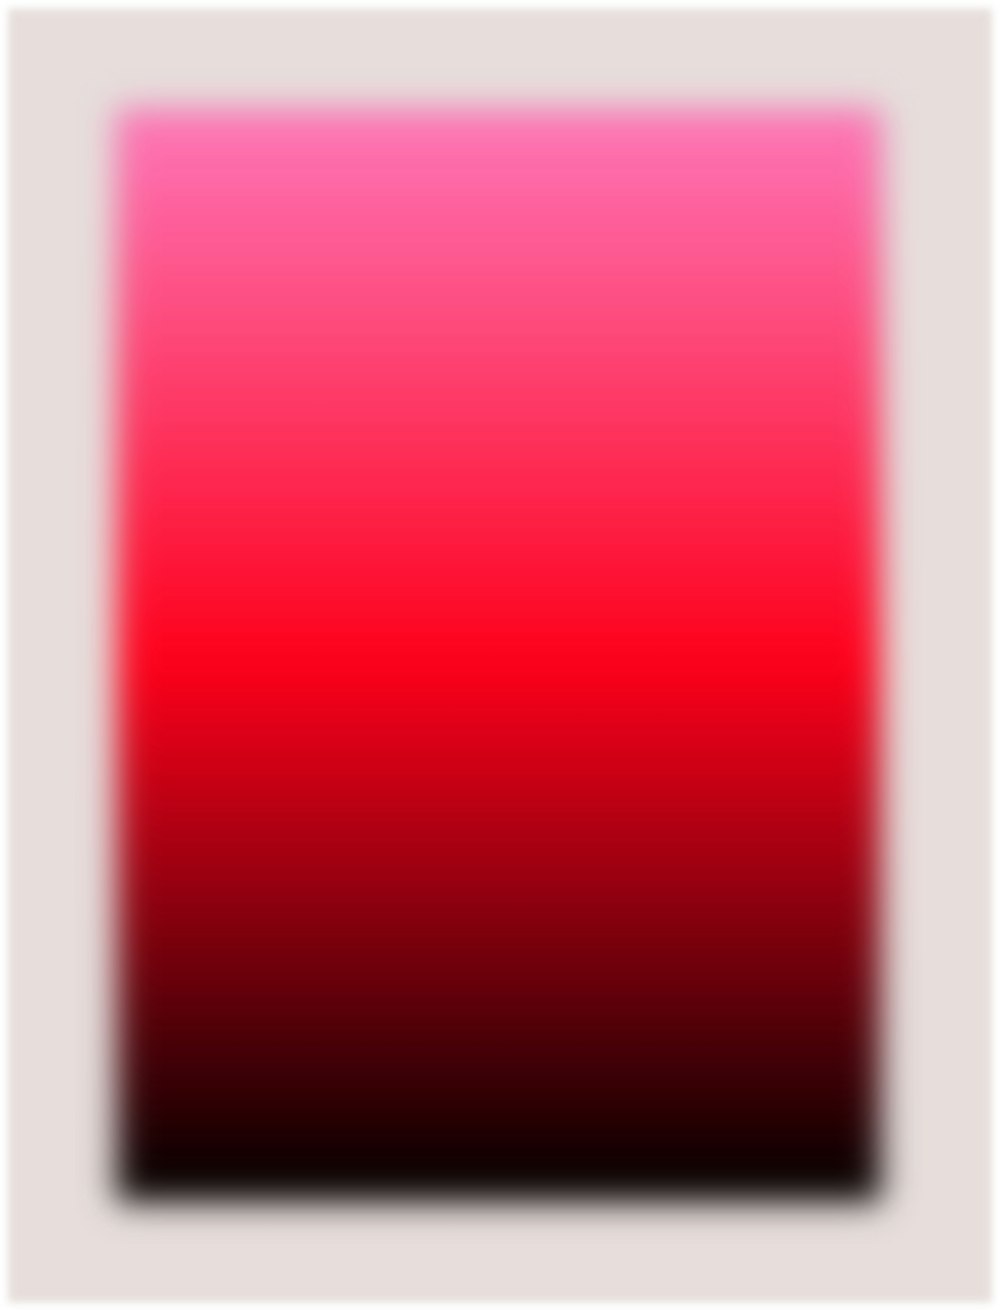 ilustração do quadro vermelho e branco